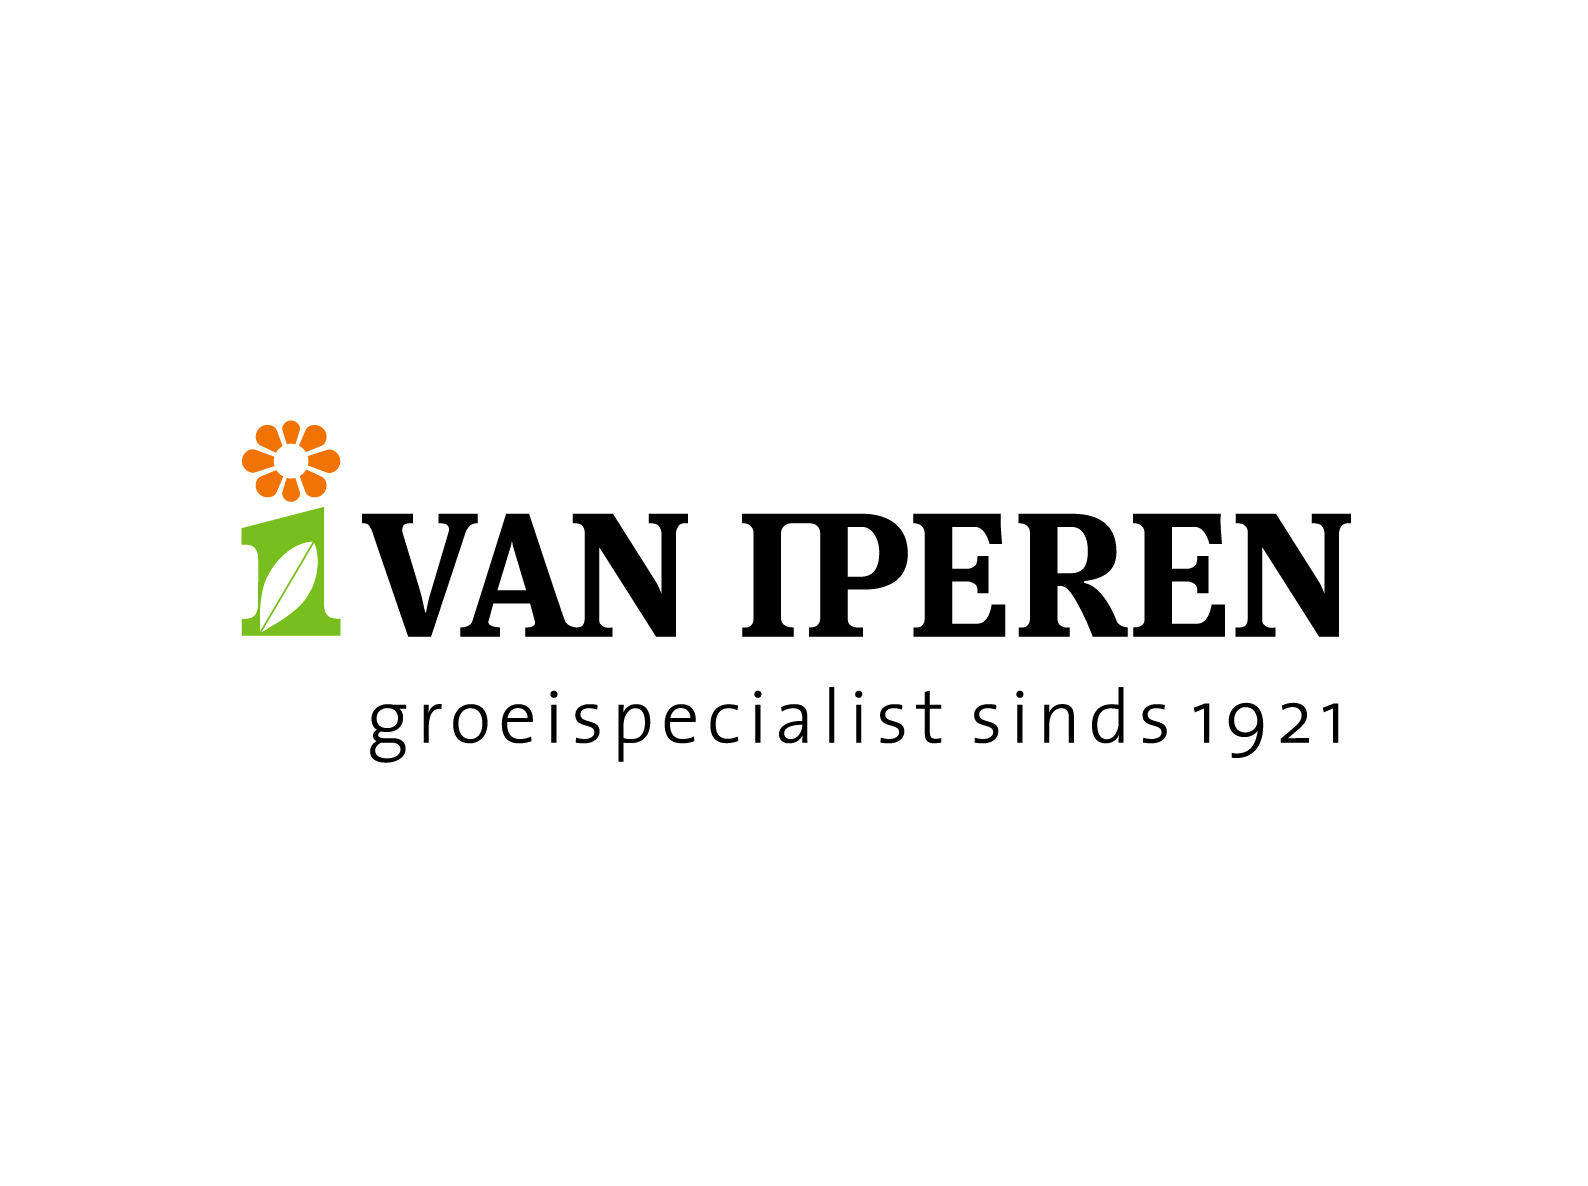 vaniperenbvniderlands logo